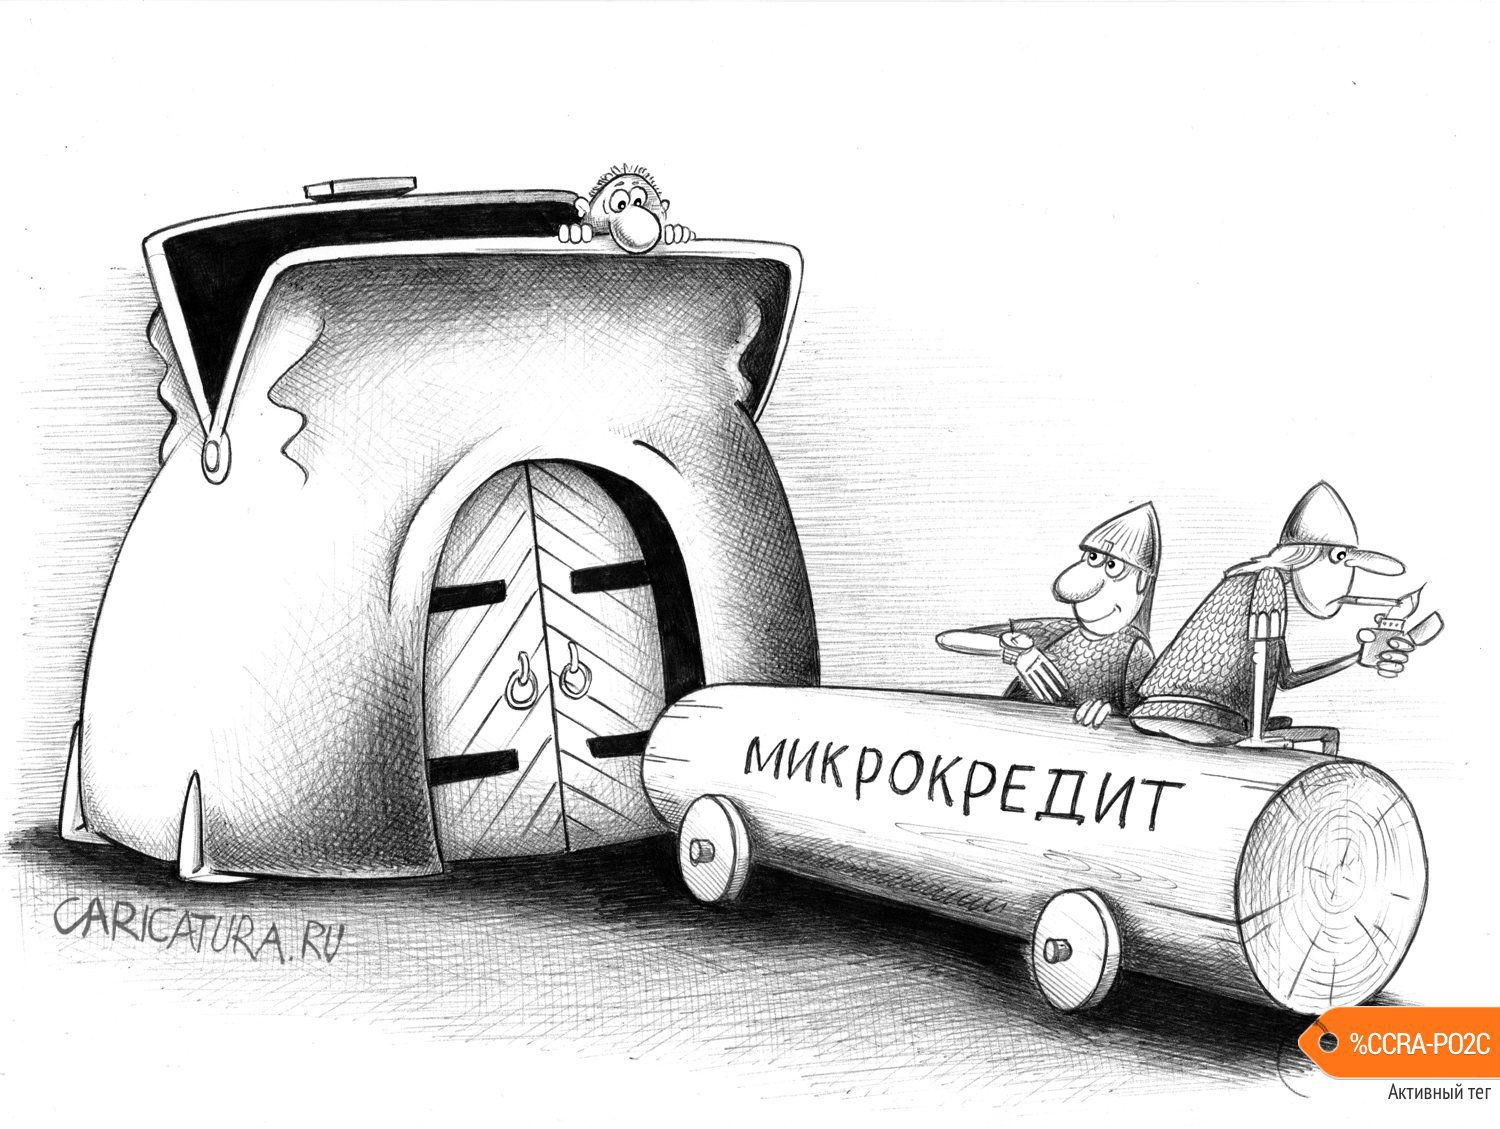 Карикатура "Микрокредит", Сергей Корсун